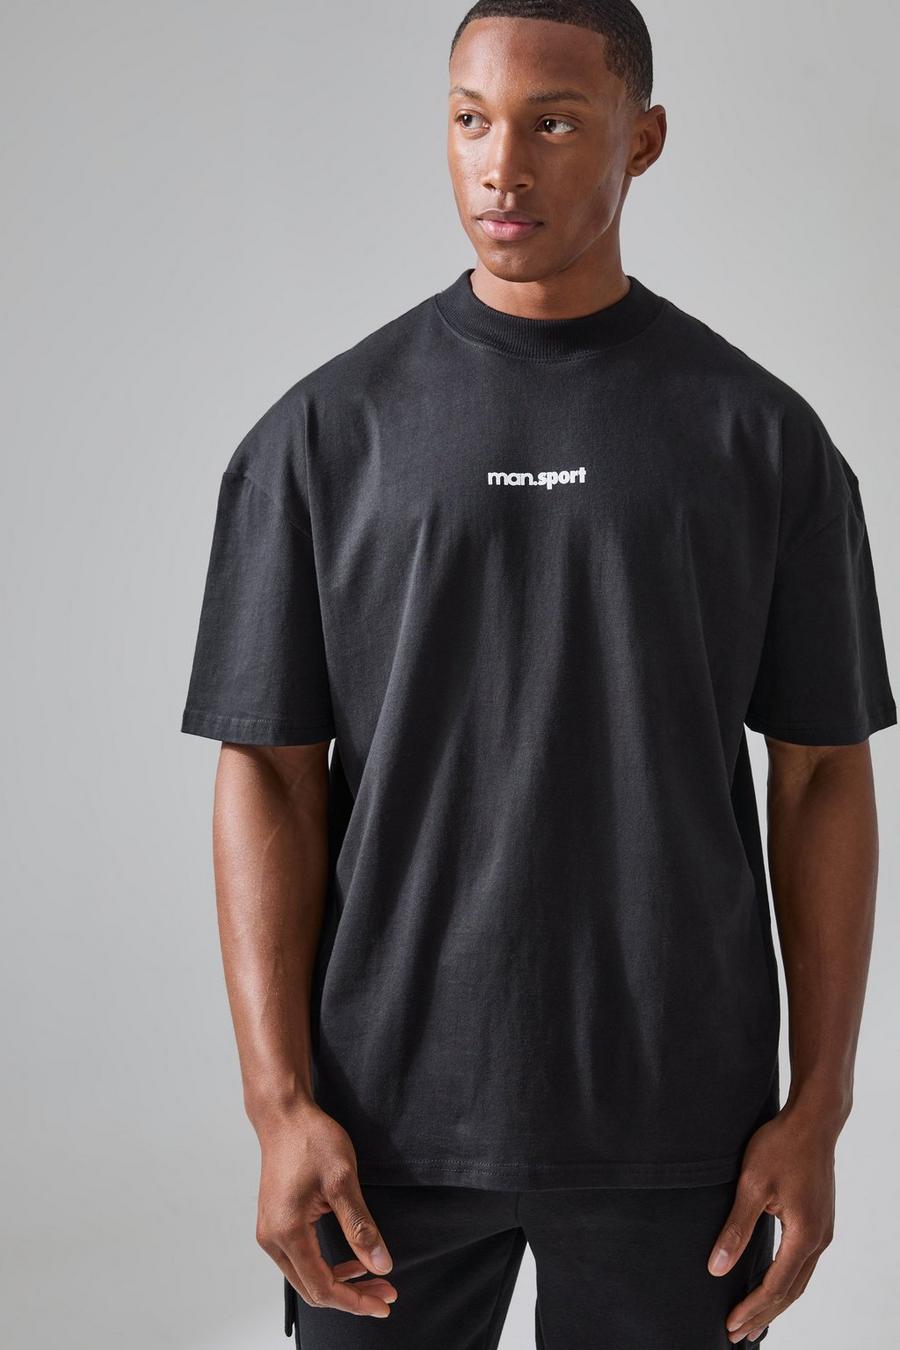 T-shirt de sport oversize à slogan One More Rep - MAN Active, Black